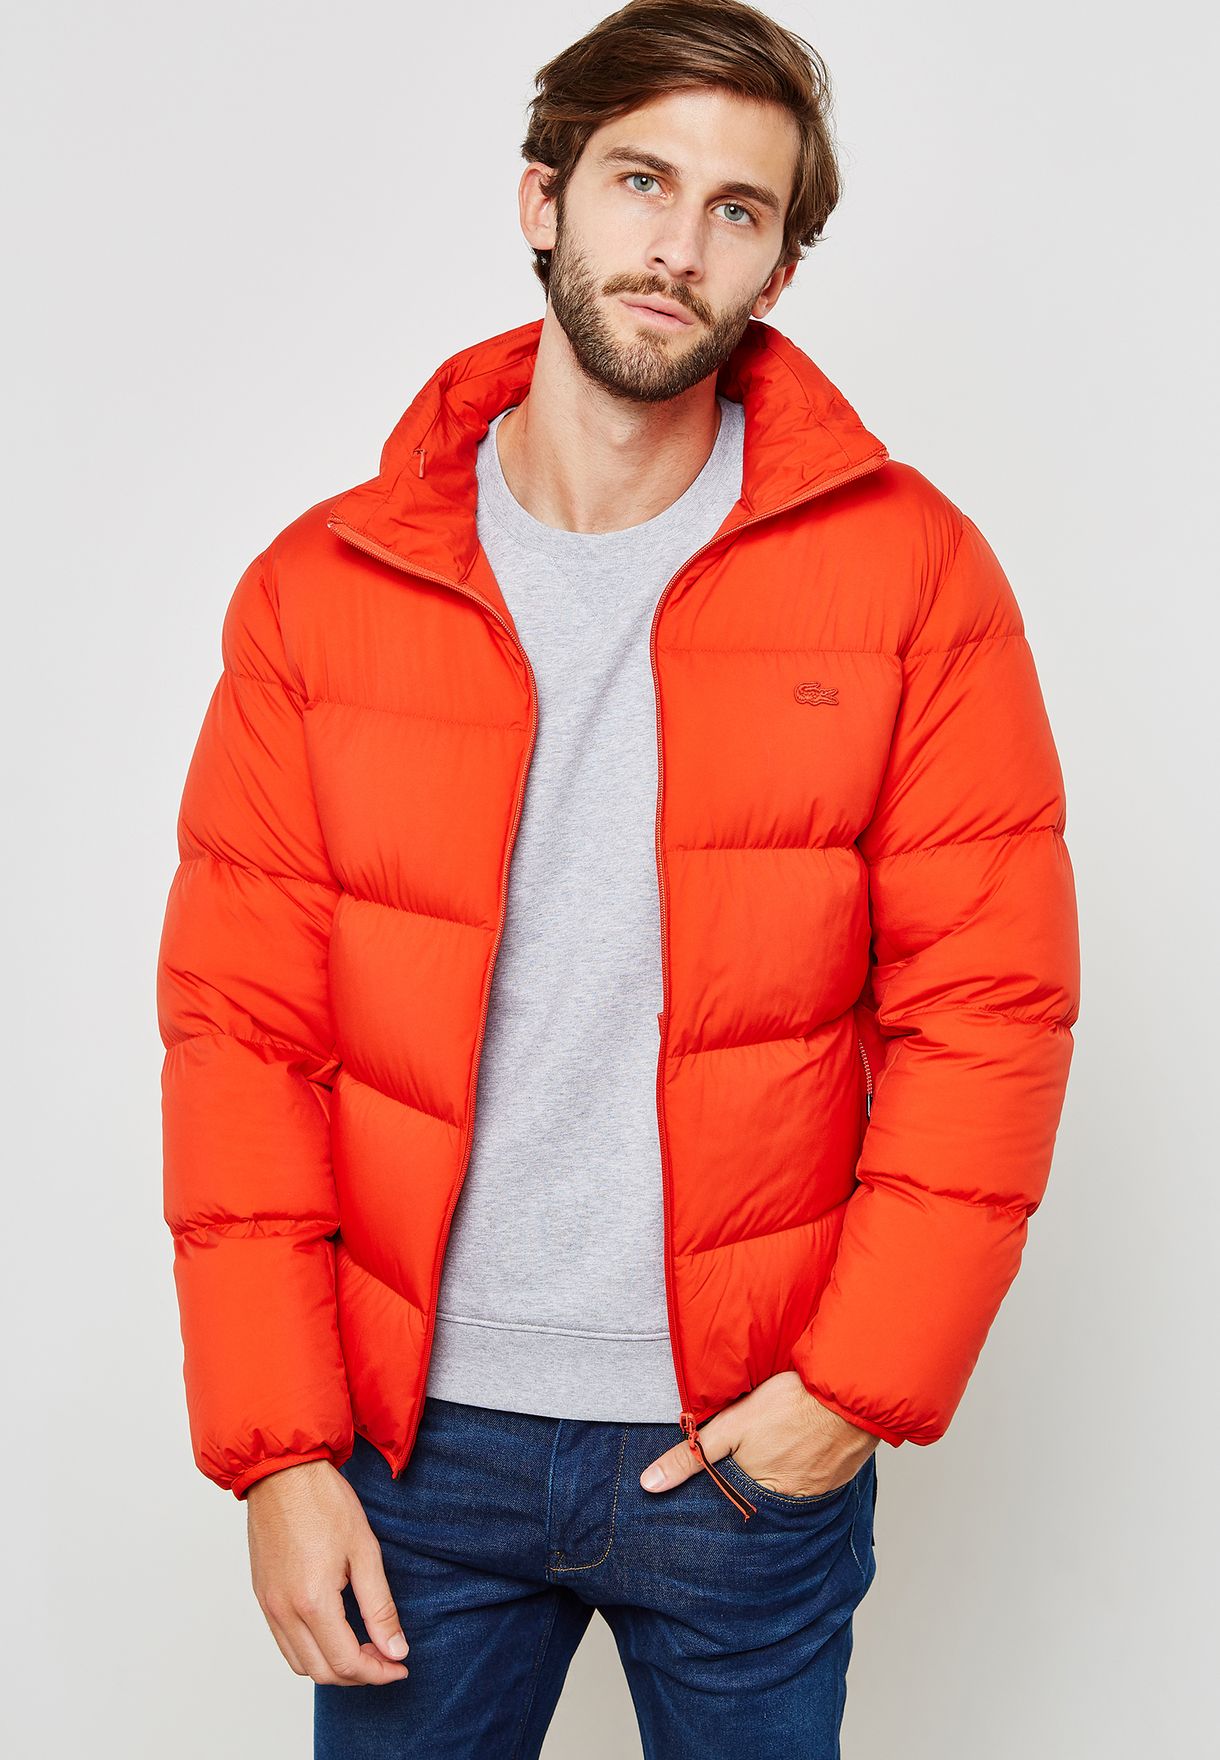 lacoste orange jacket